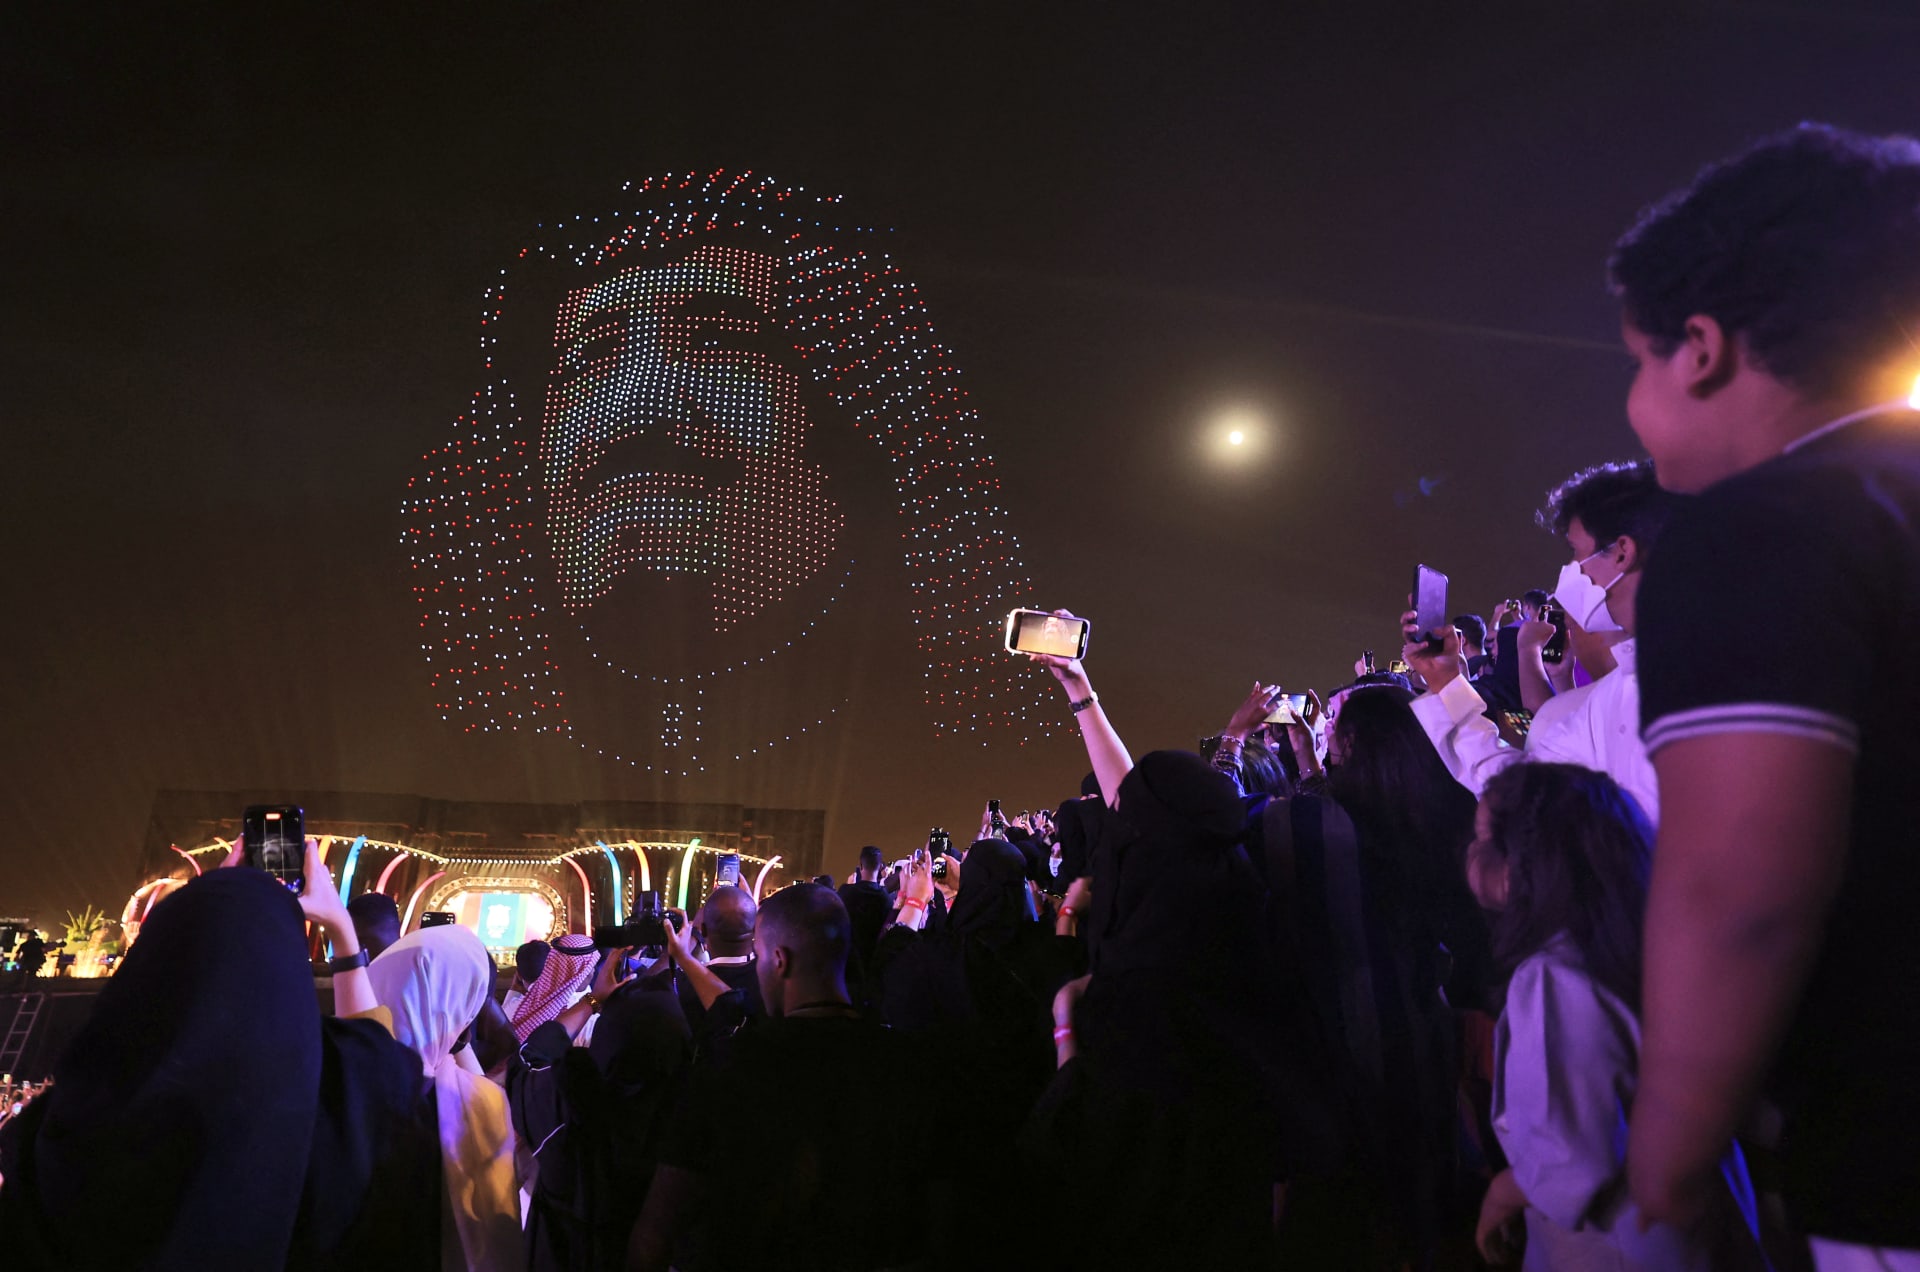 صورة للملك سلمان بن عبدالعزيز شُكّلت عبر طائرات "درون" ليلة افتتاح احتفالات موسم الرياض بالعاصمة السعودية